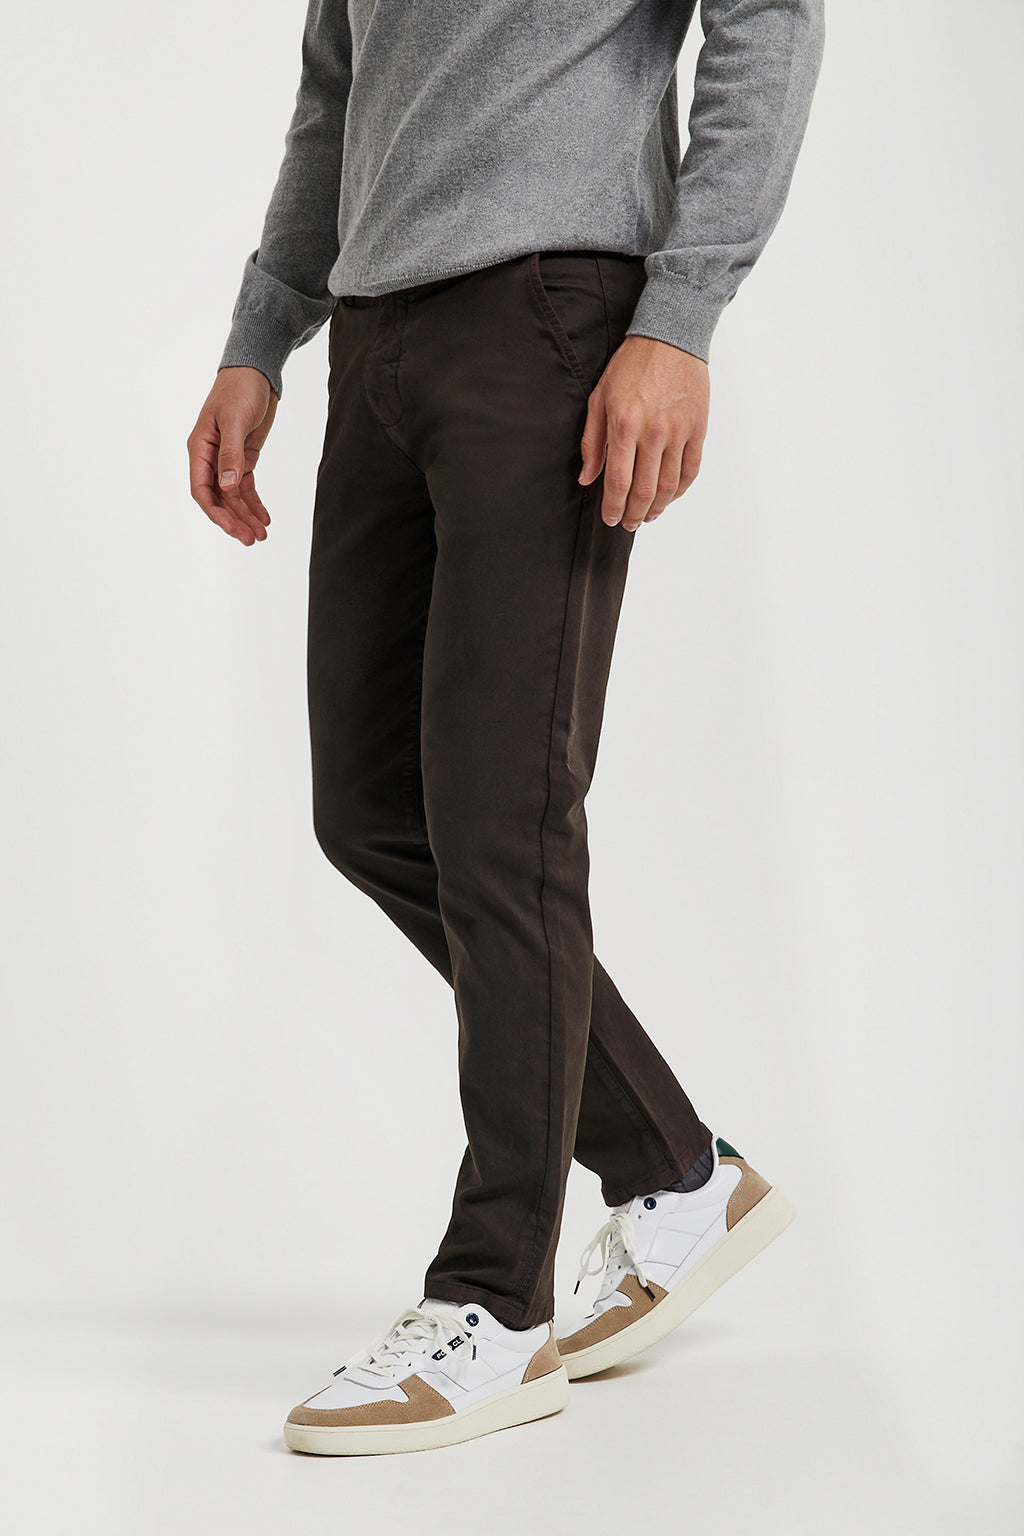 Fácil de comprender Peluquero Resonar Pantalón chino marrón oscuro de corte slim con logo Polo Club en bolsi